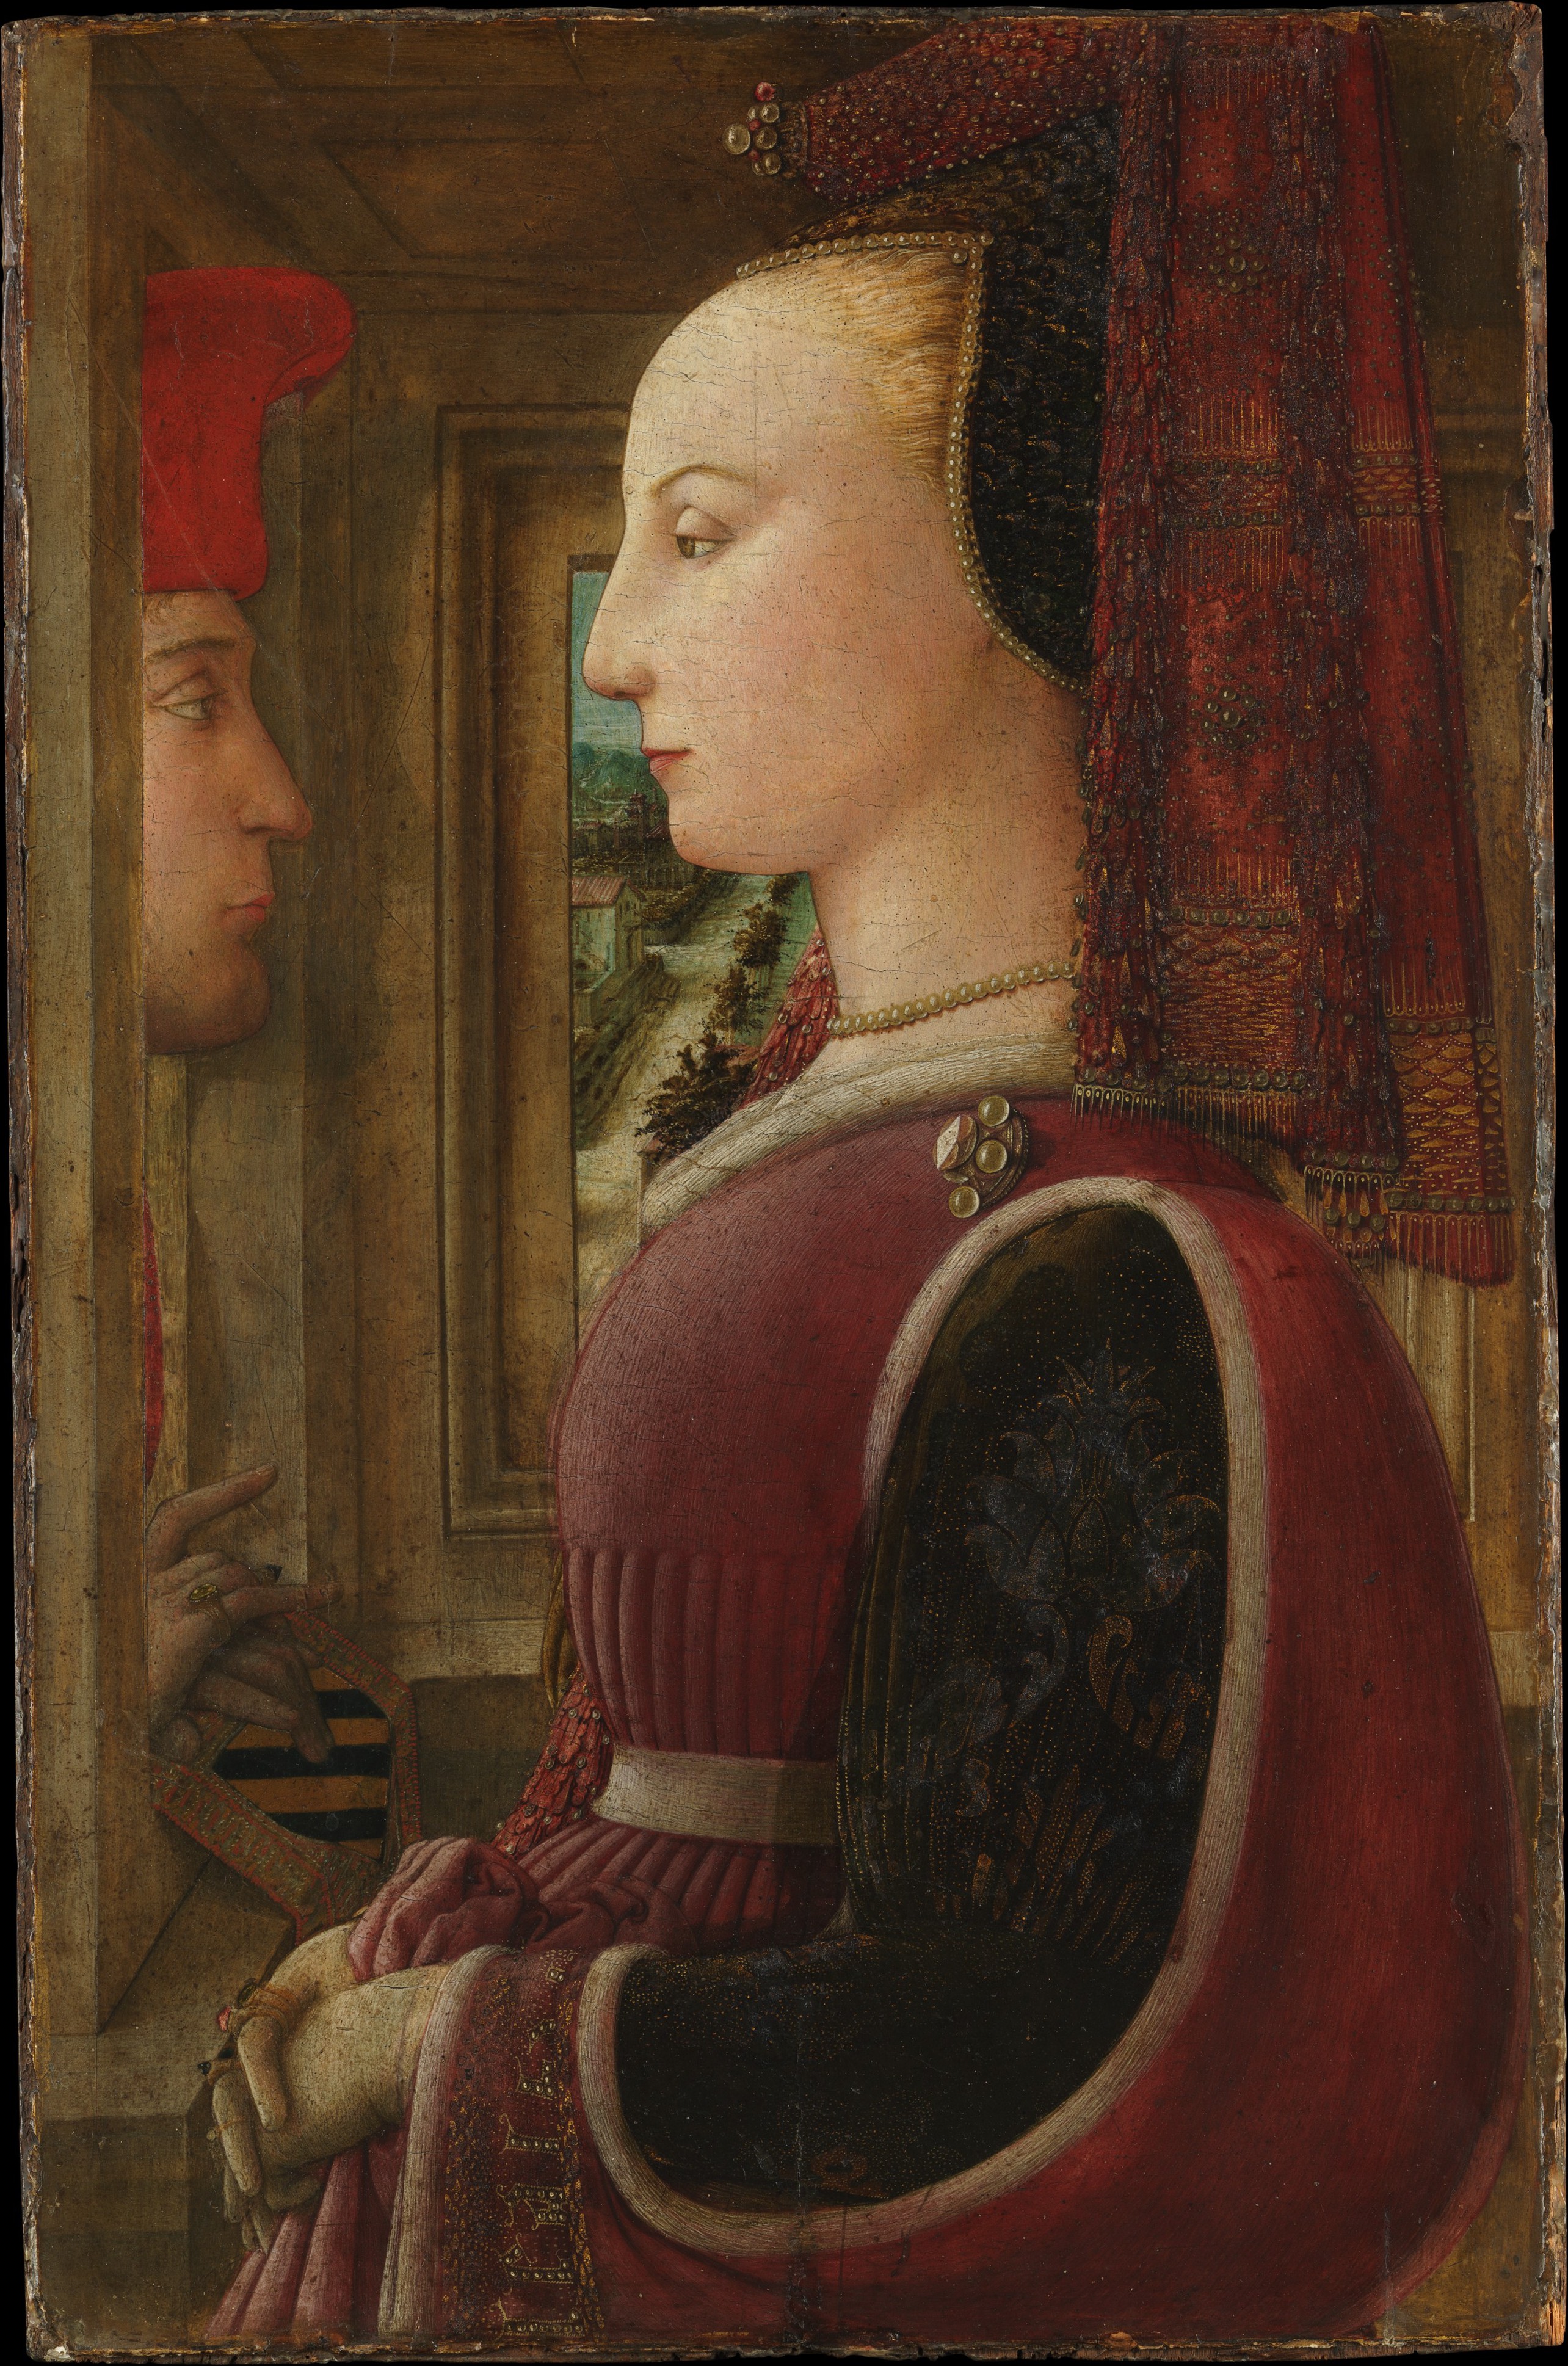 Ritratto di donna con uomo alla finestra by Fra Filippo Lippi - 1440 circa - 64,1 x 41,9 cm 